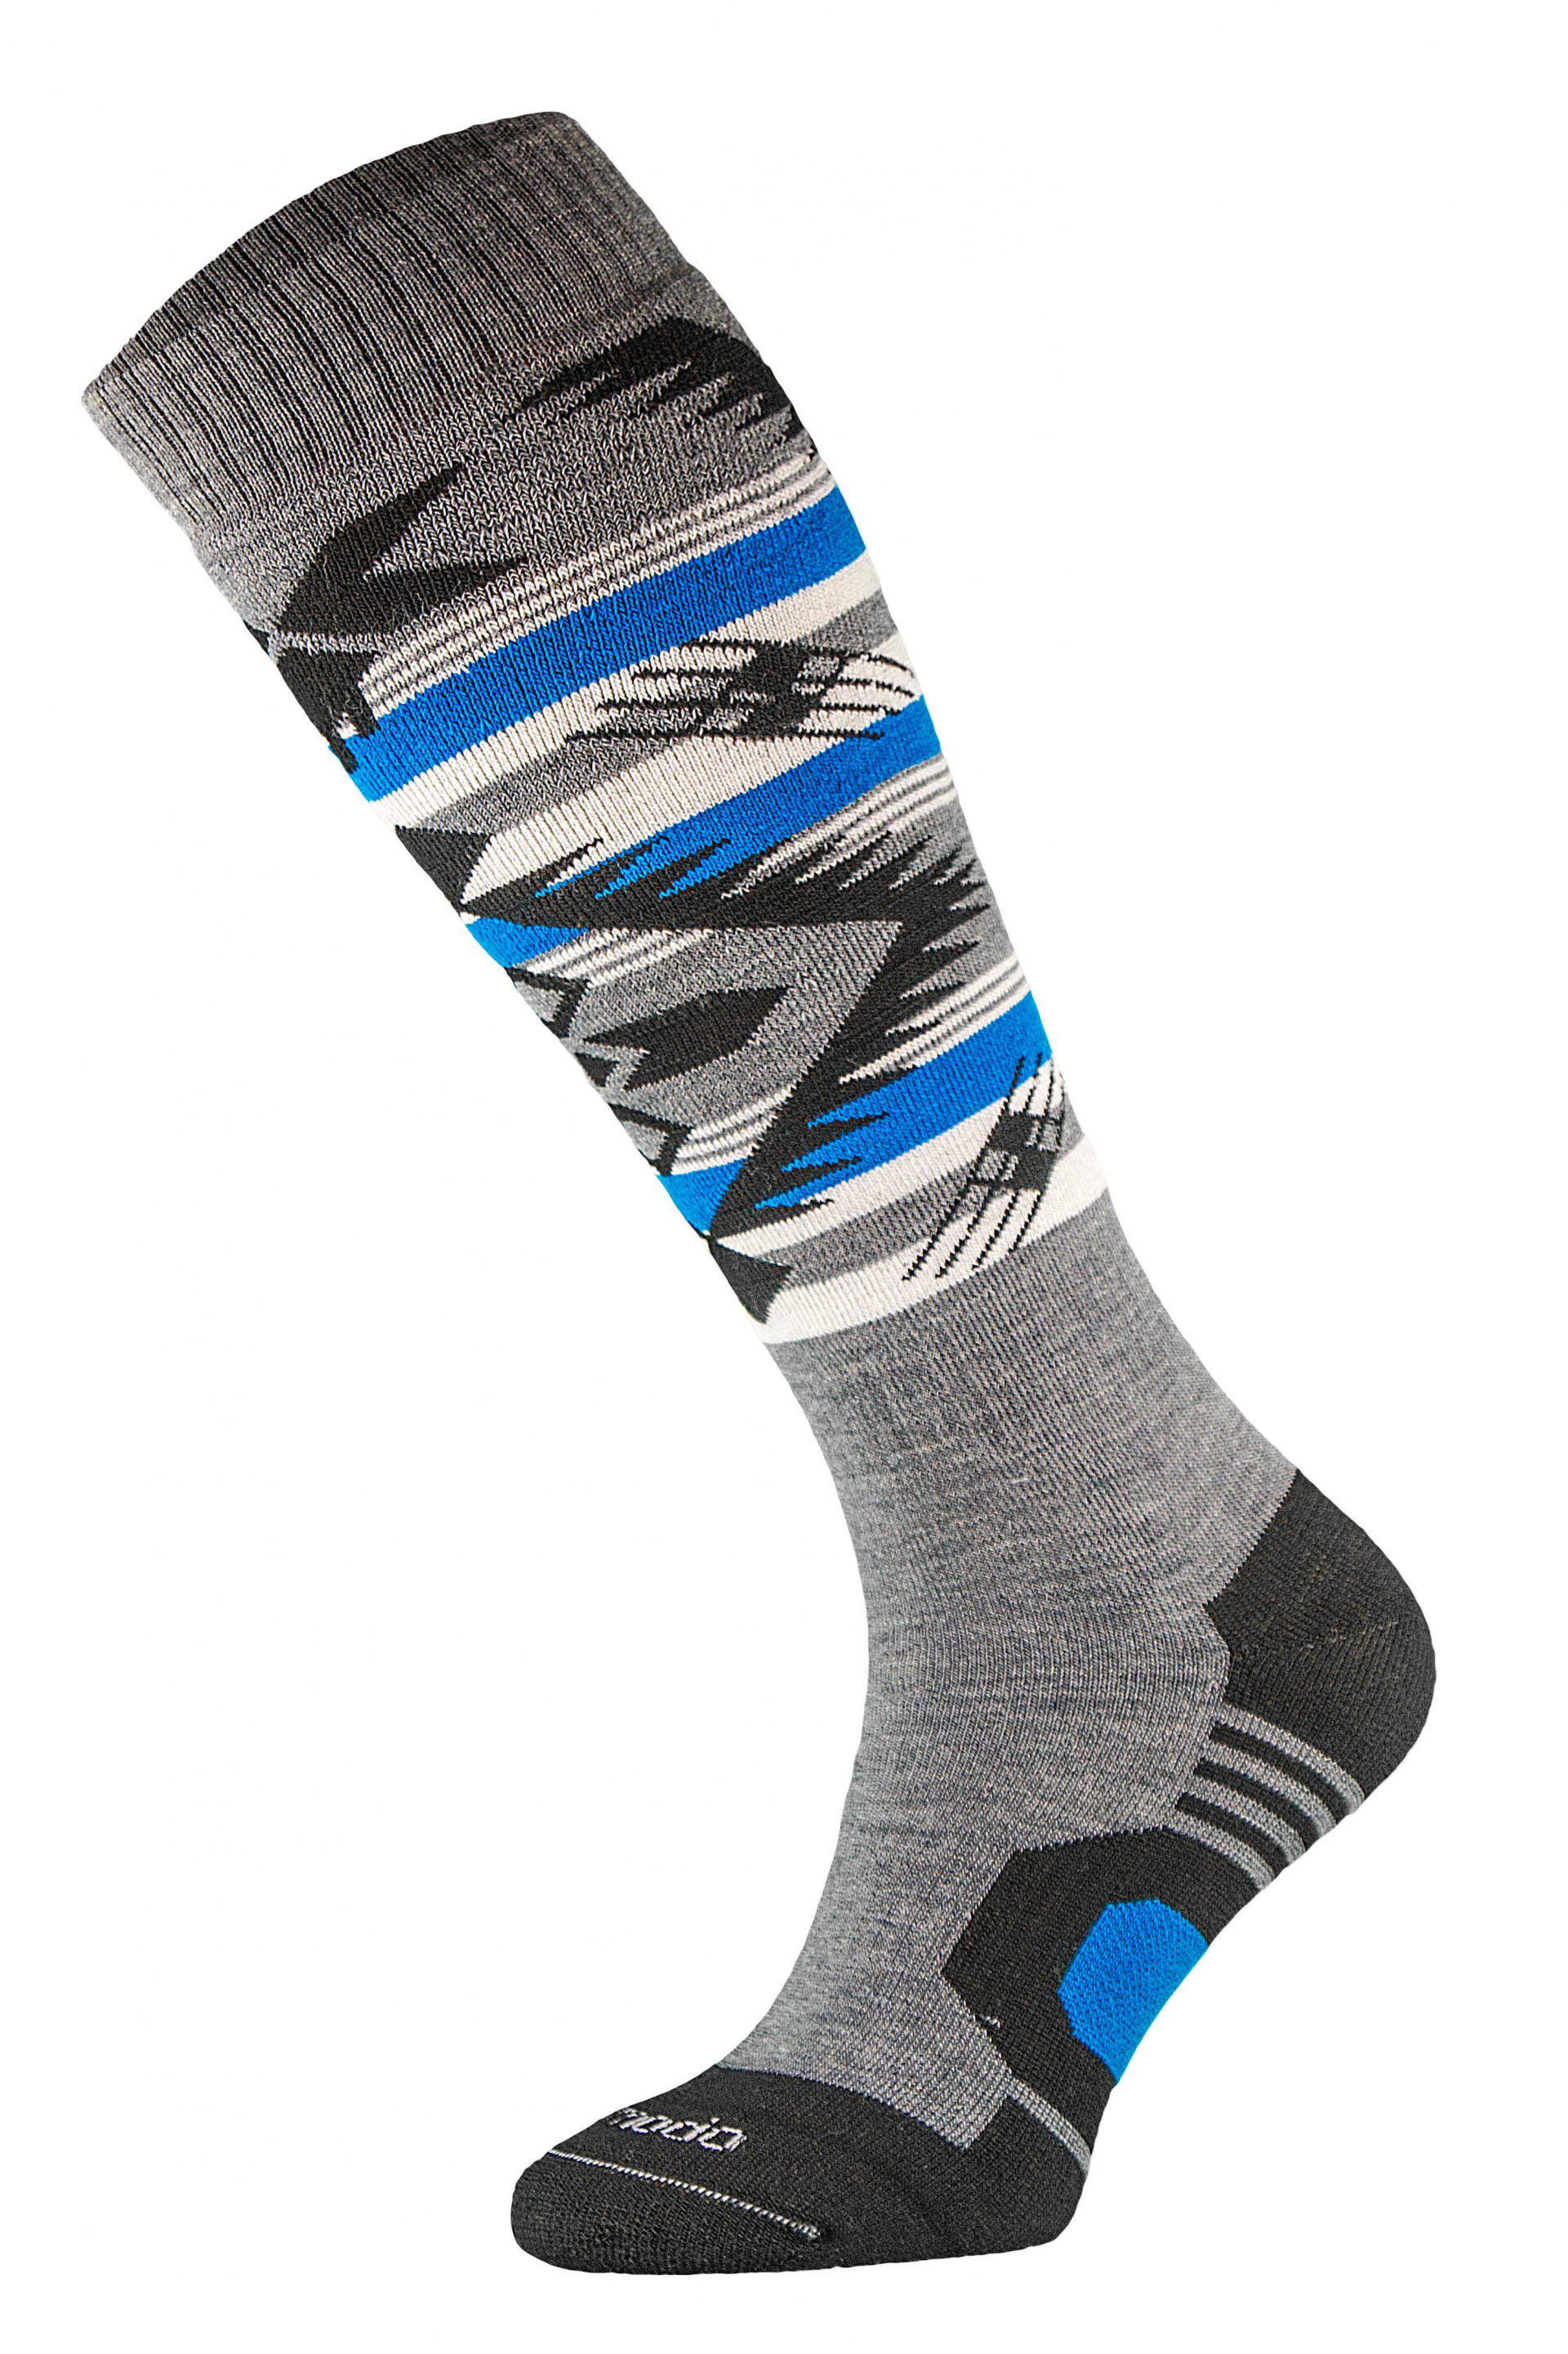 Chaussettes chaudes idéales pour les sports d'hiver par Comodo Socks (Plusieurs coloris)